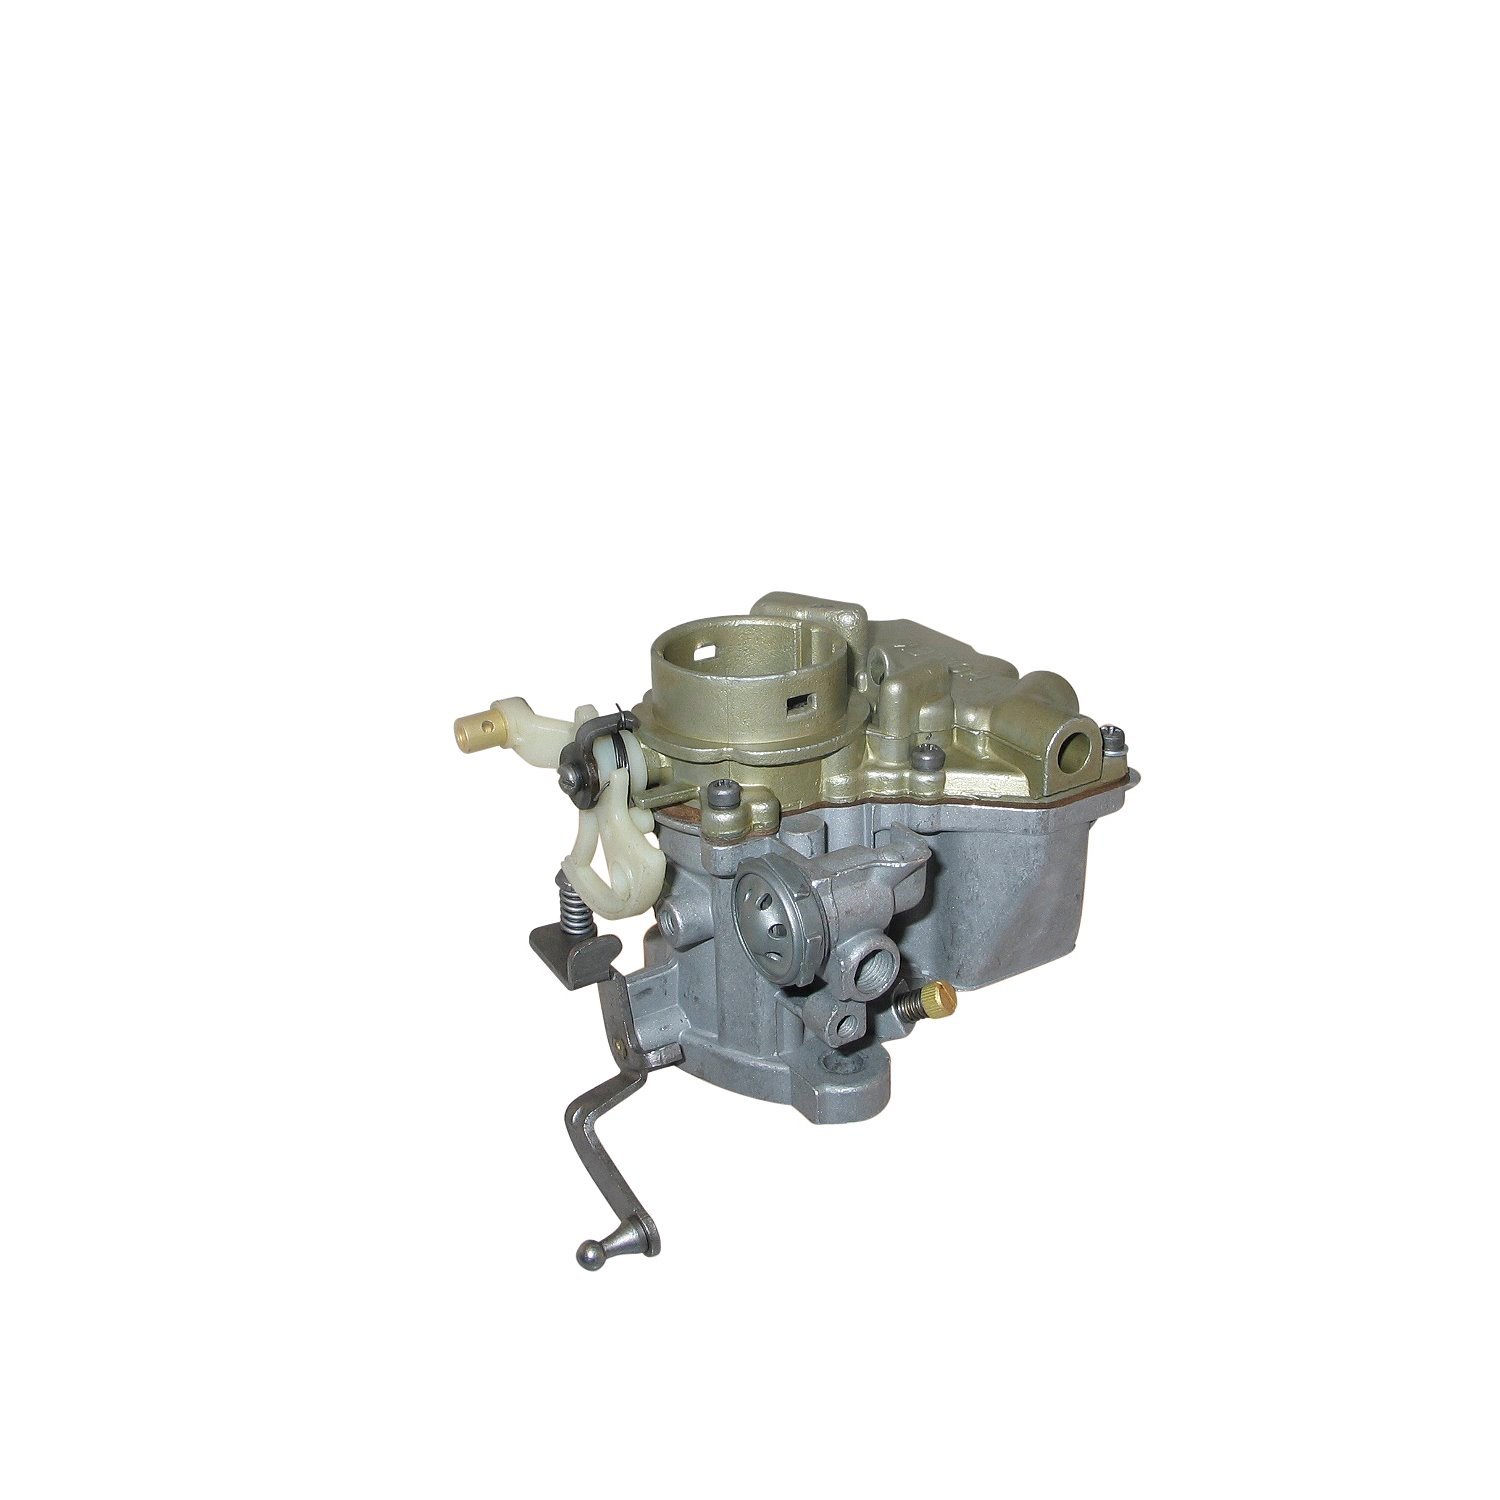 10-1035 Holley Remanufactured Carburetor